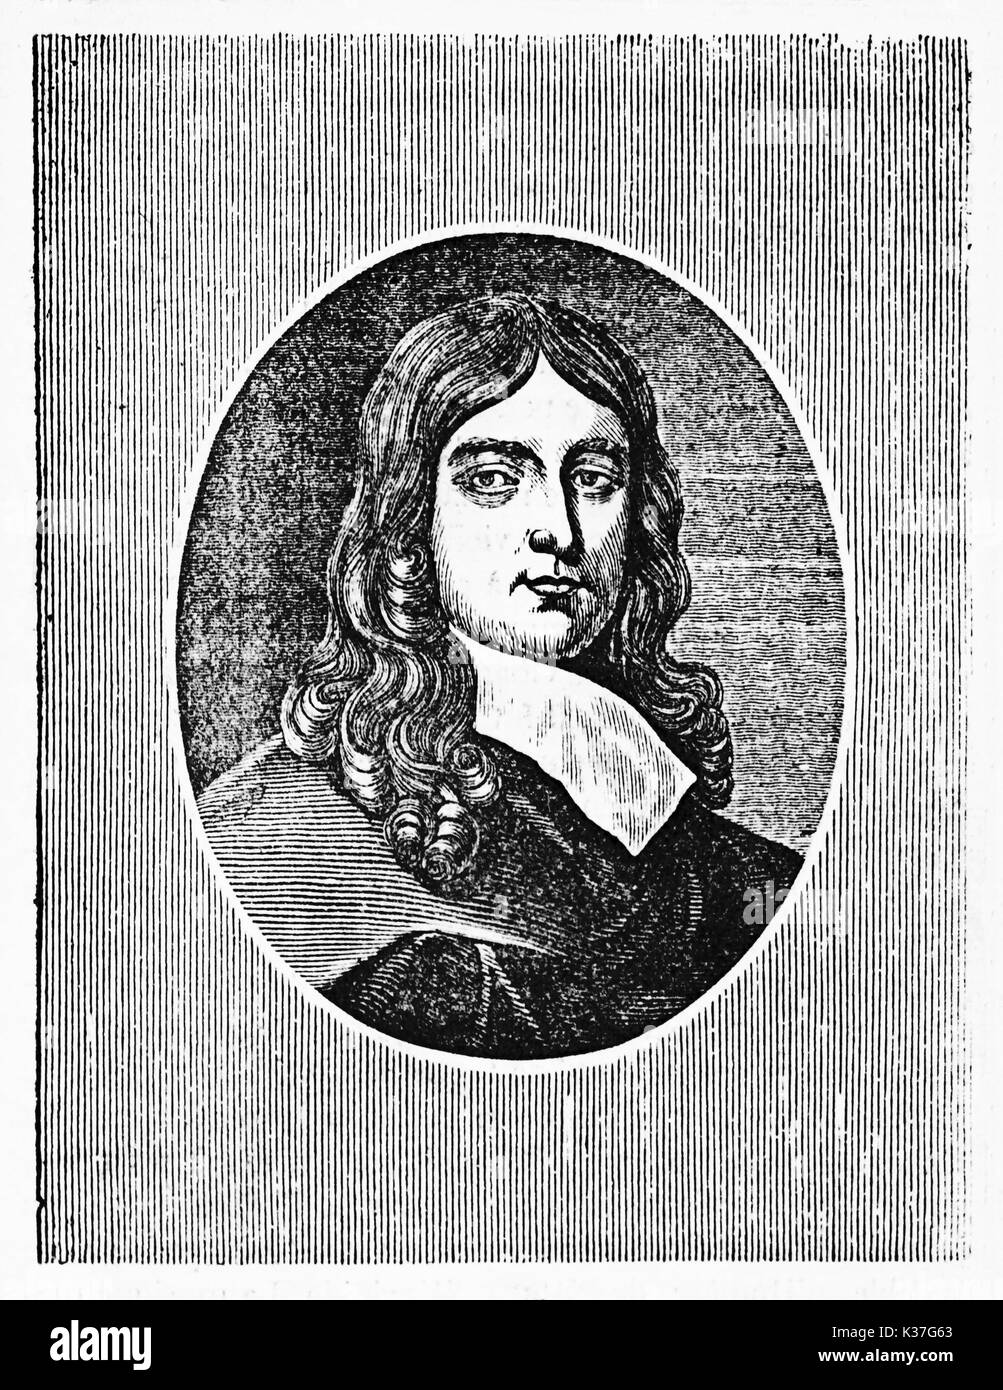 Ancien portrait gravé de John Milton (1608 - 1674), poète anglais, dans un cadre ovale. Vieille Illustration d'auteur non identifié, publié le Magasin Pittoresque, Paris, 1834. Banque D'Images